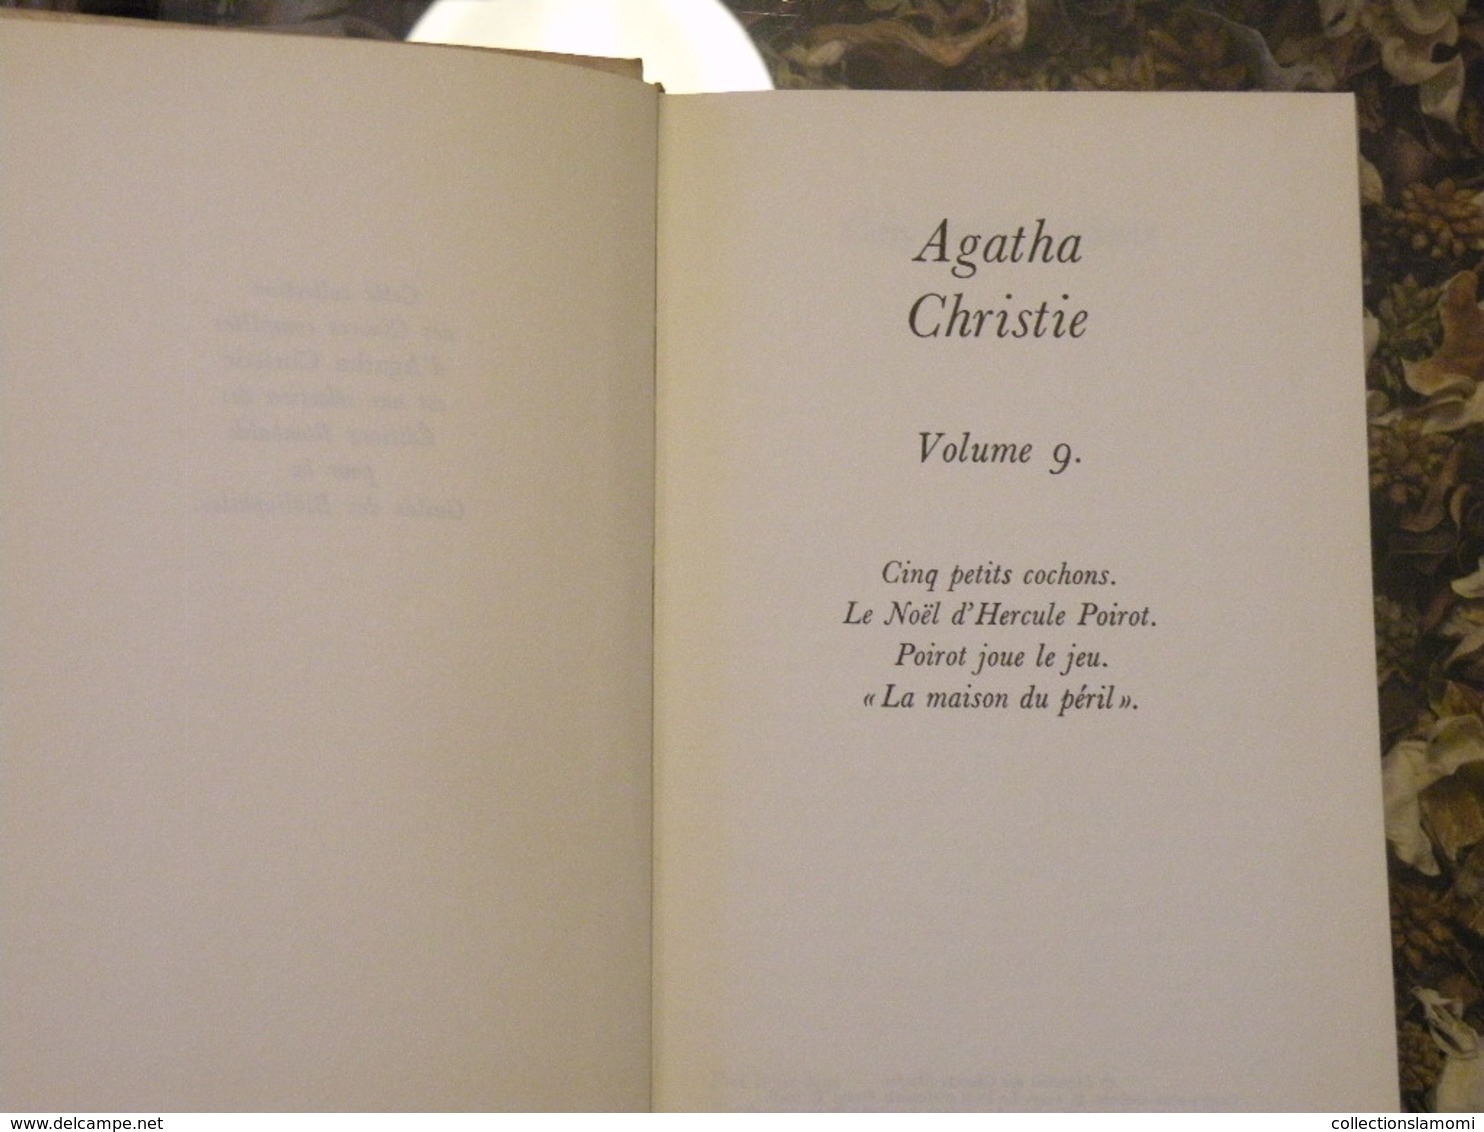 Lots de 14 livres Agatha Christie,les titres sont directement à voir sur les photos (Attention manque le n°7)